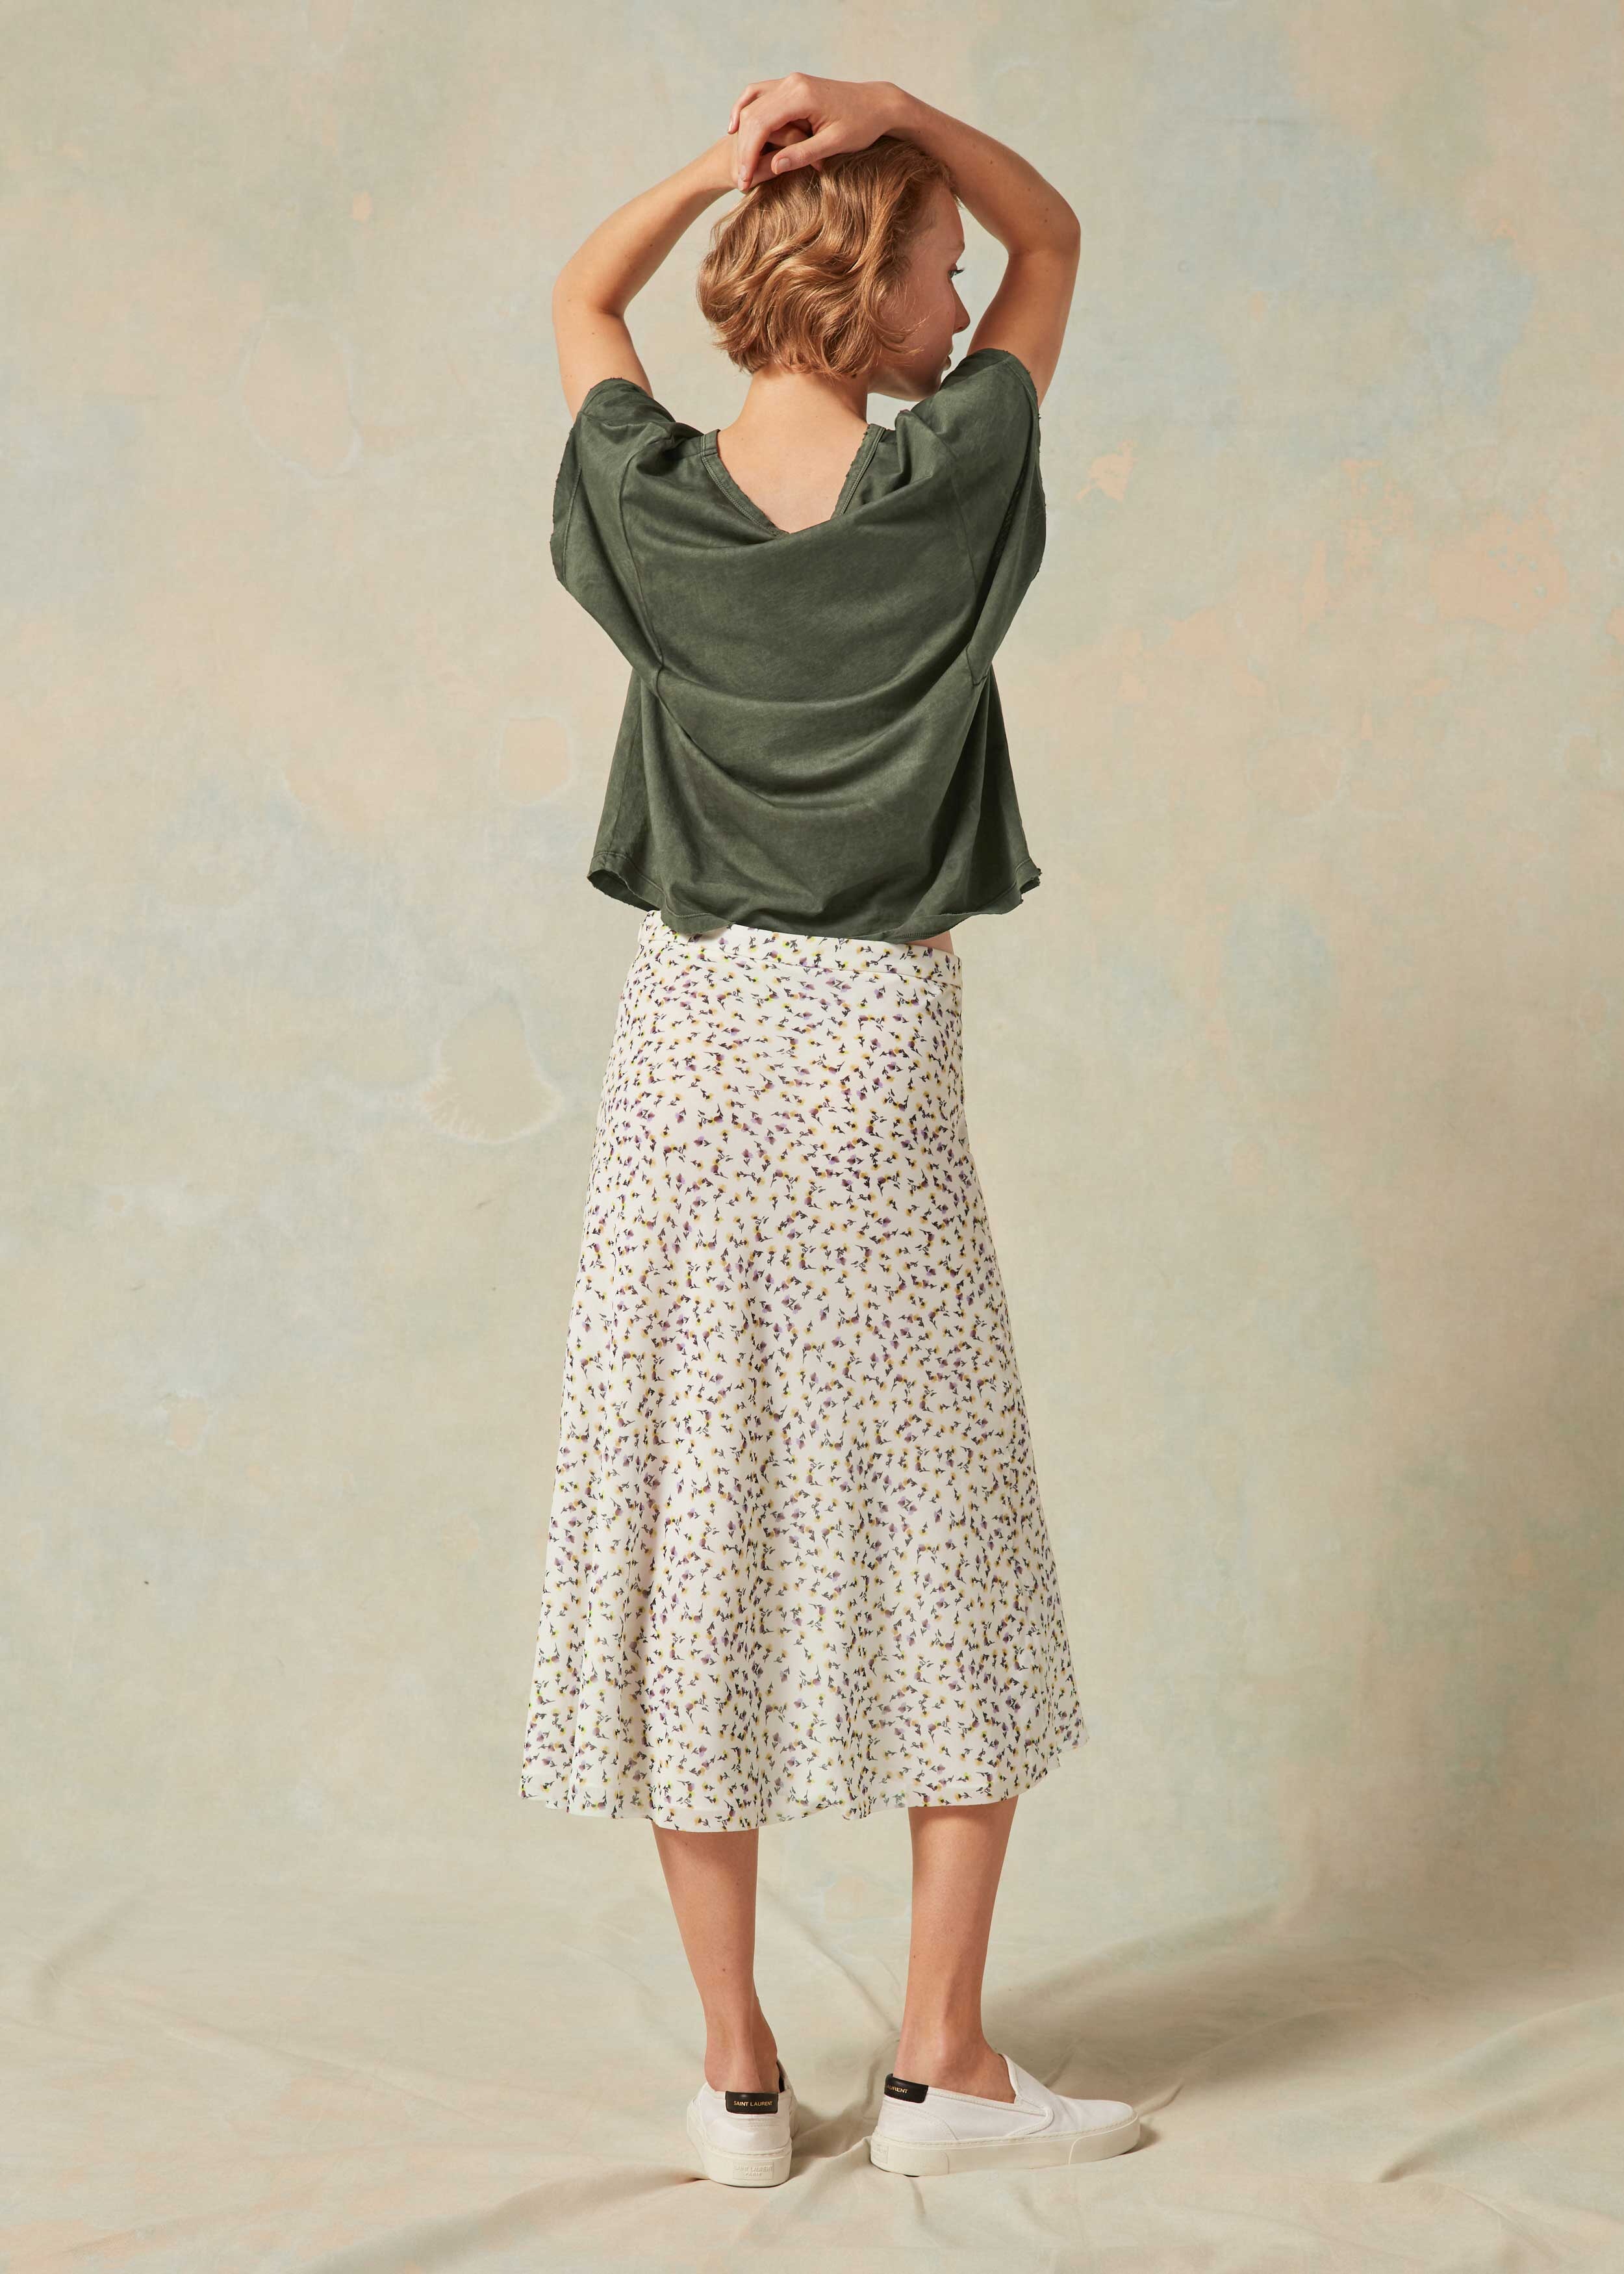 floral meadow bias cut skirt